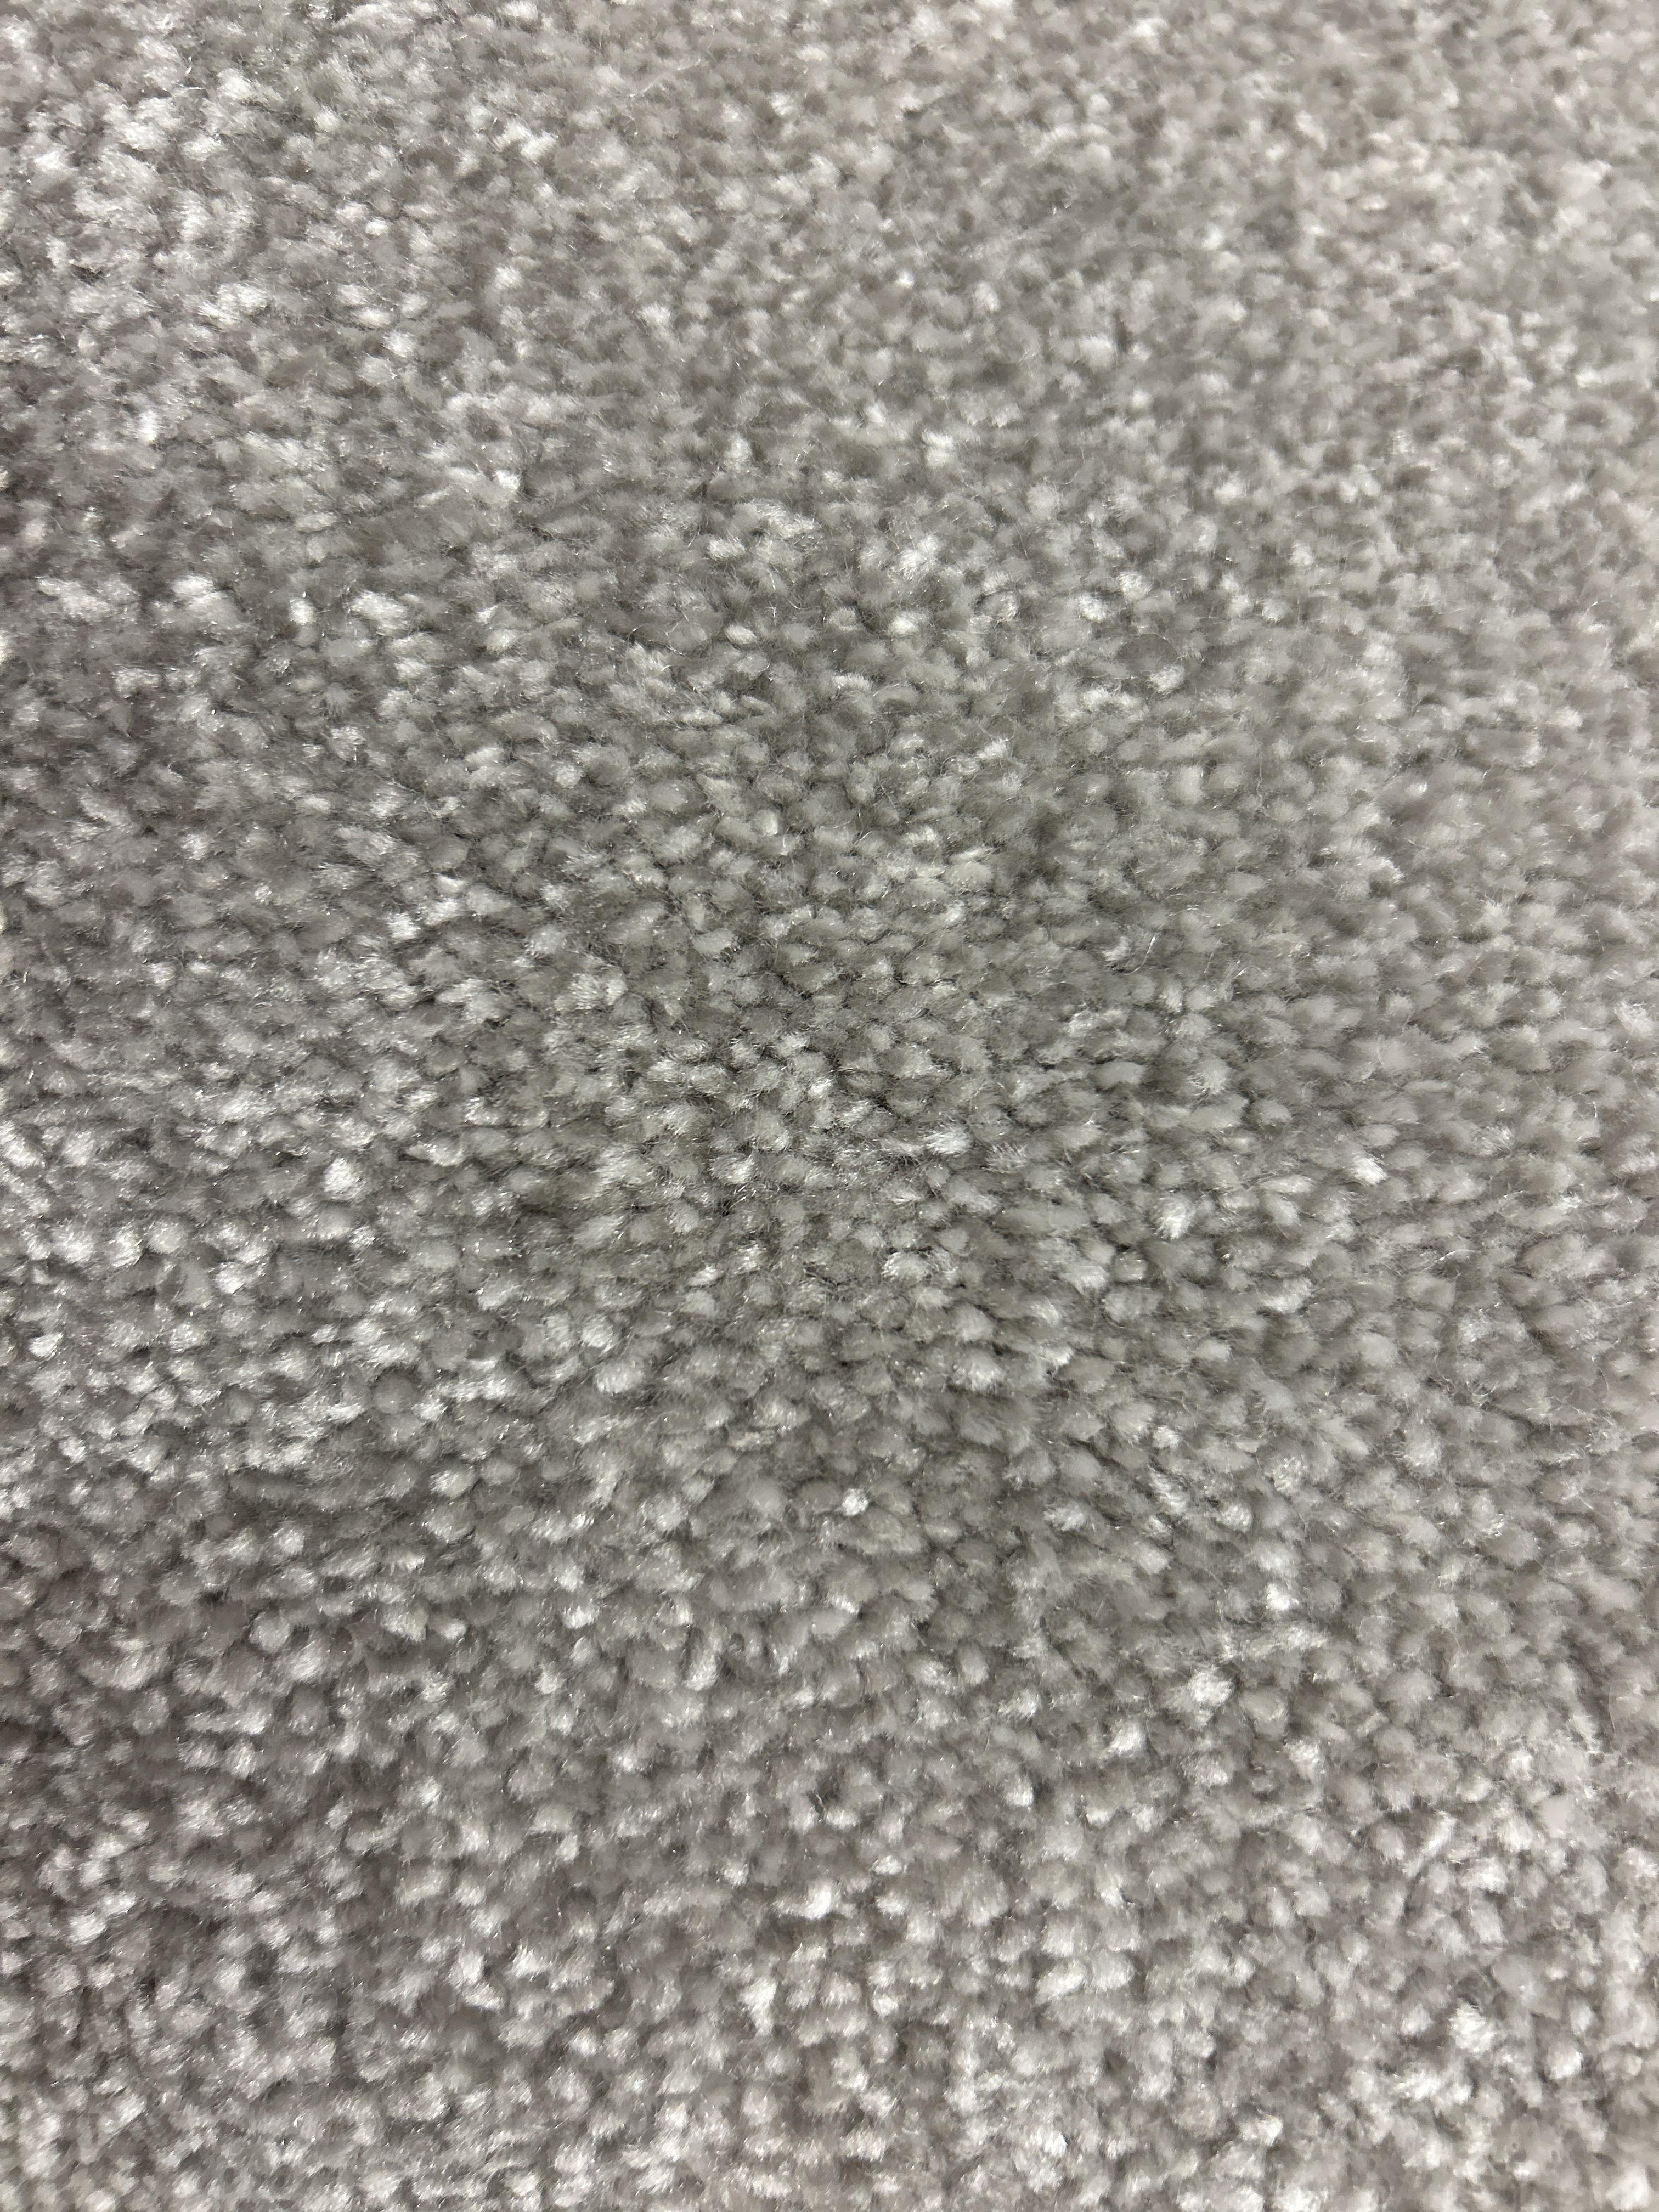 Haragate carpet